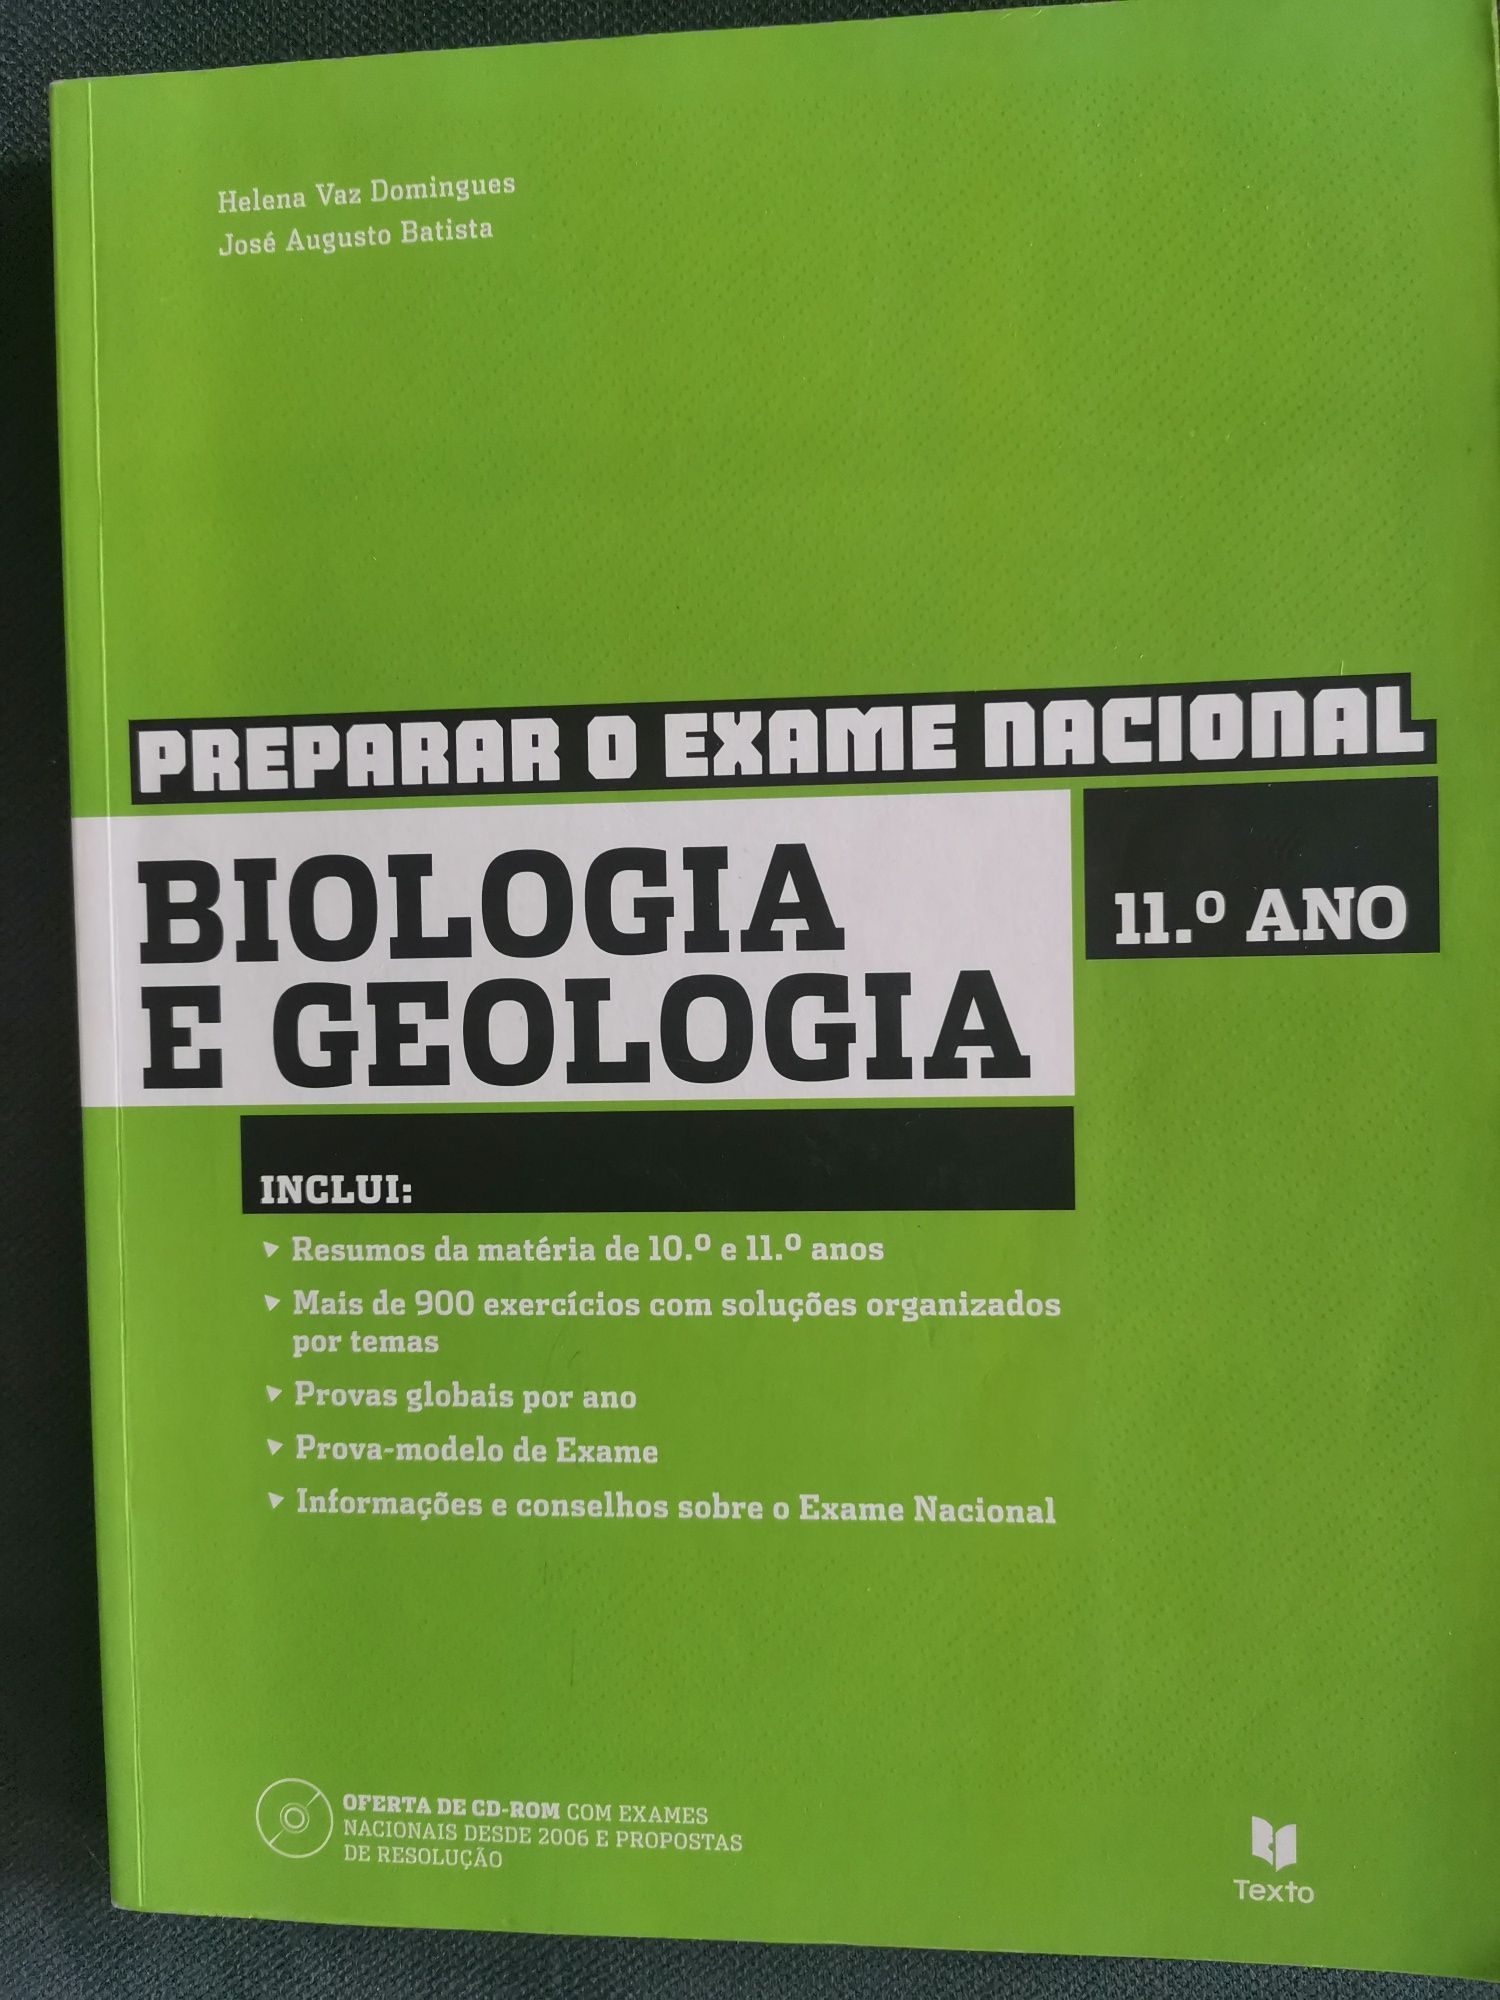 Manual de preparação exame Biologia geologia